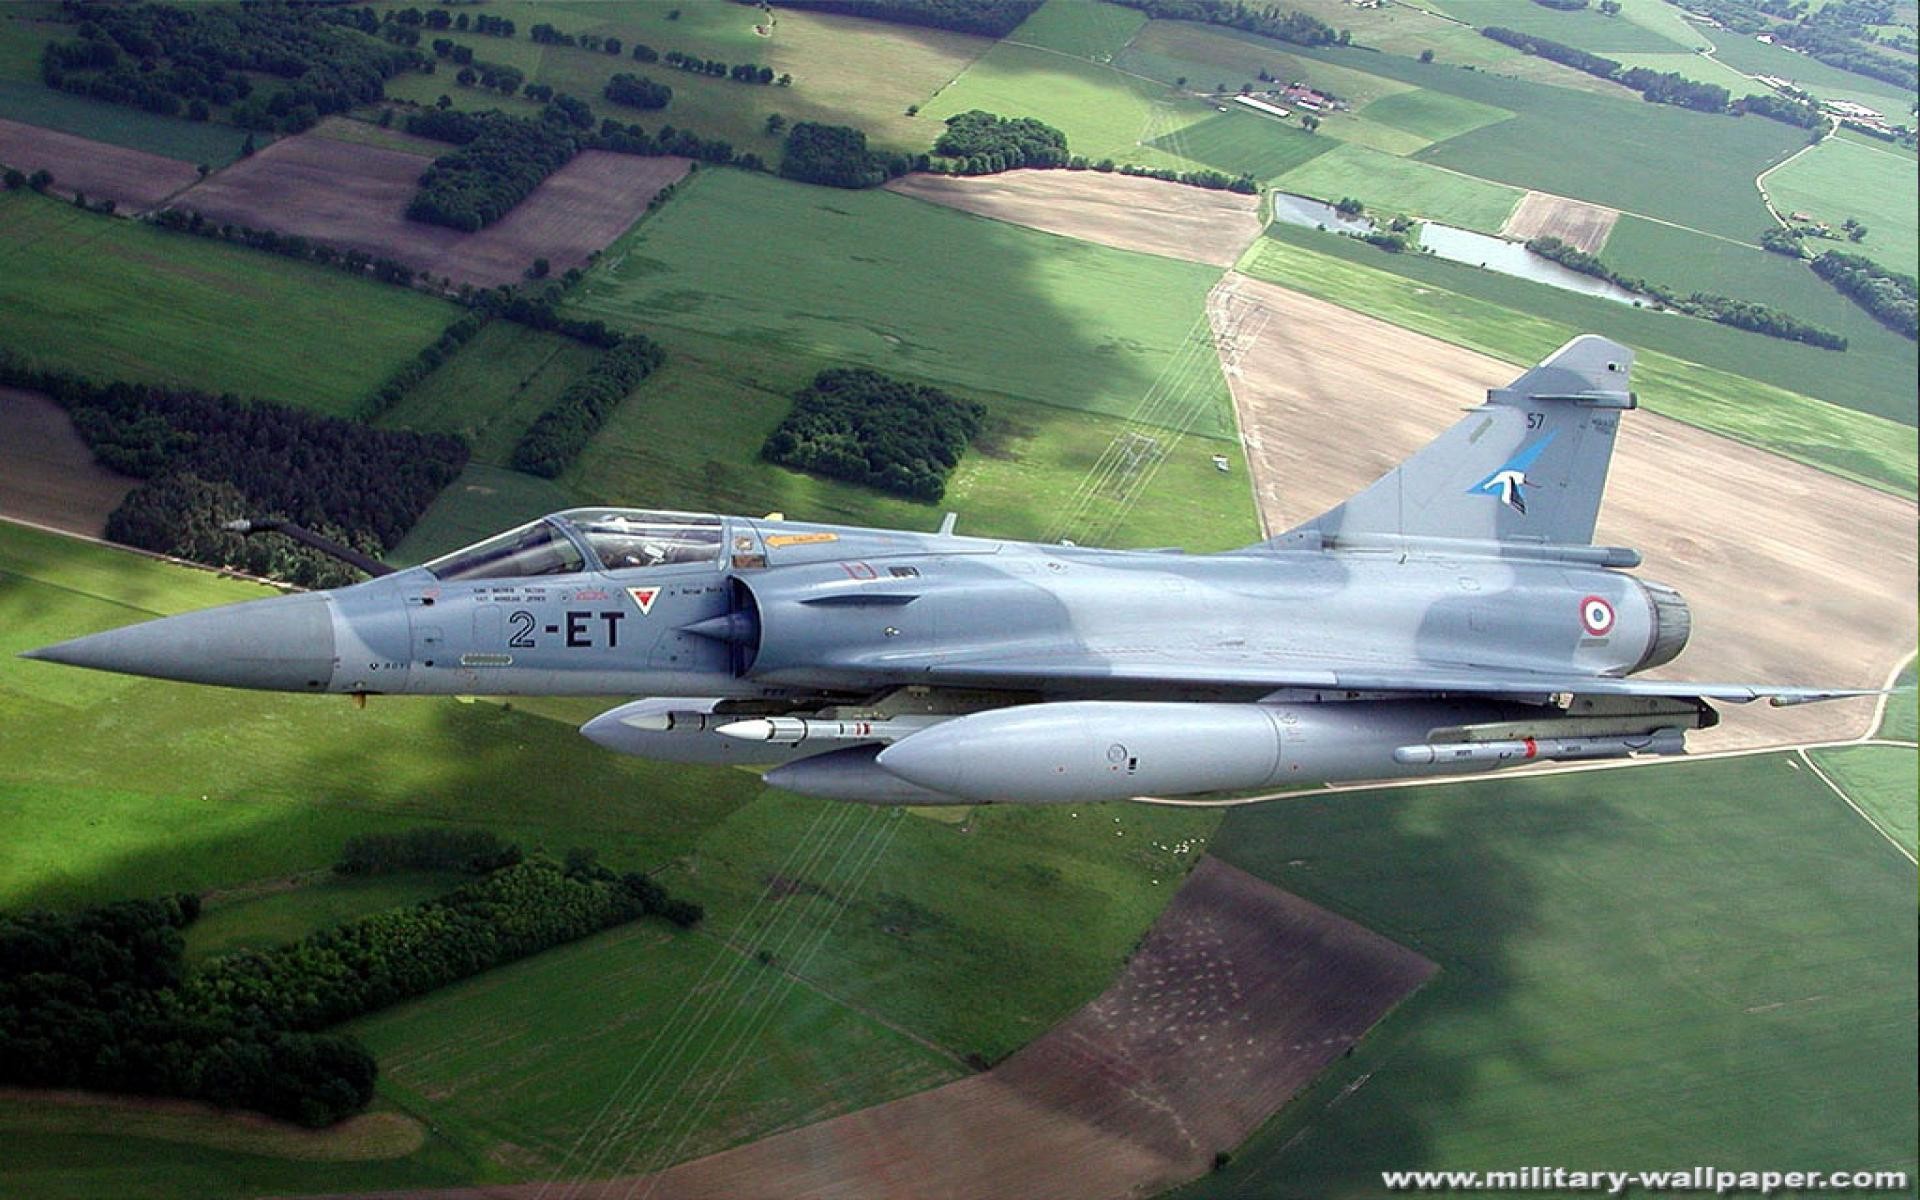 General 1920x1200 Mirage 2000 jet fighter airplane aircraft military aircraft military vehicle french aircraft Dassault Aviation